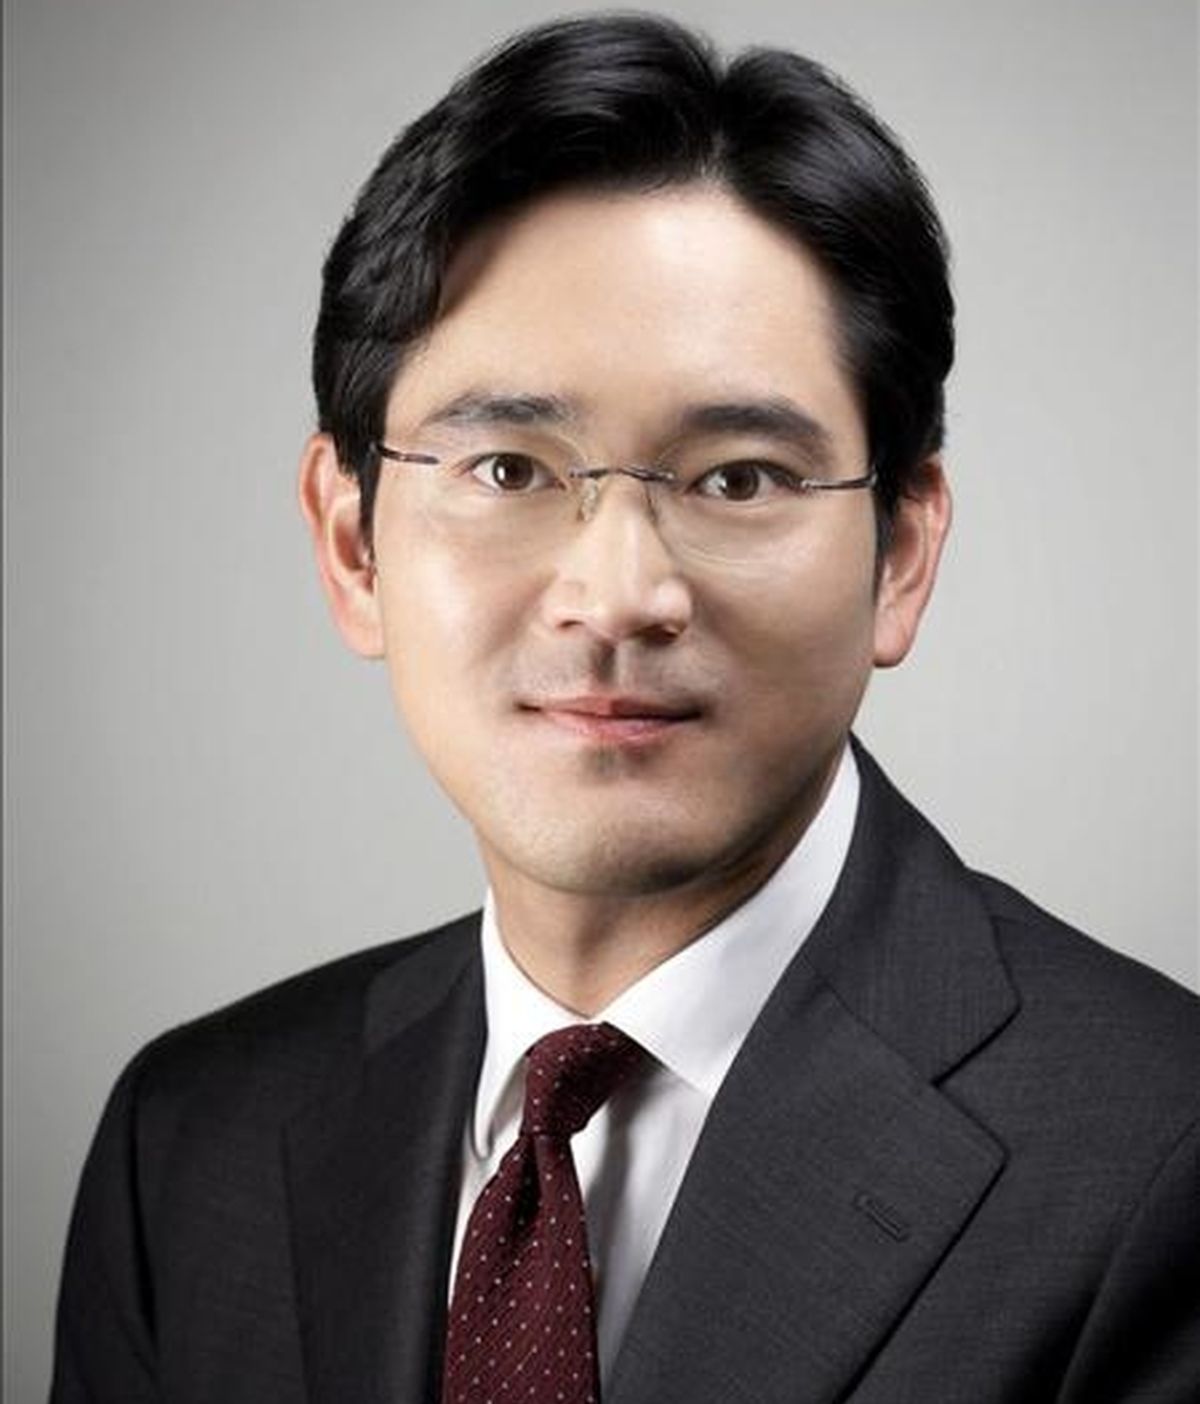 Fotografía sin fechar del vicepresidente de la compañía Samsung Electronics, Lee Jae-yong, quien fue promovido a la presidencia del grupo Samsung este viernes. EFE